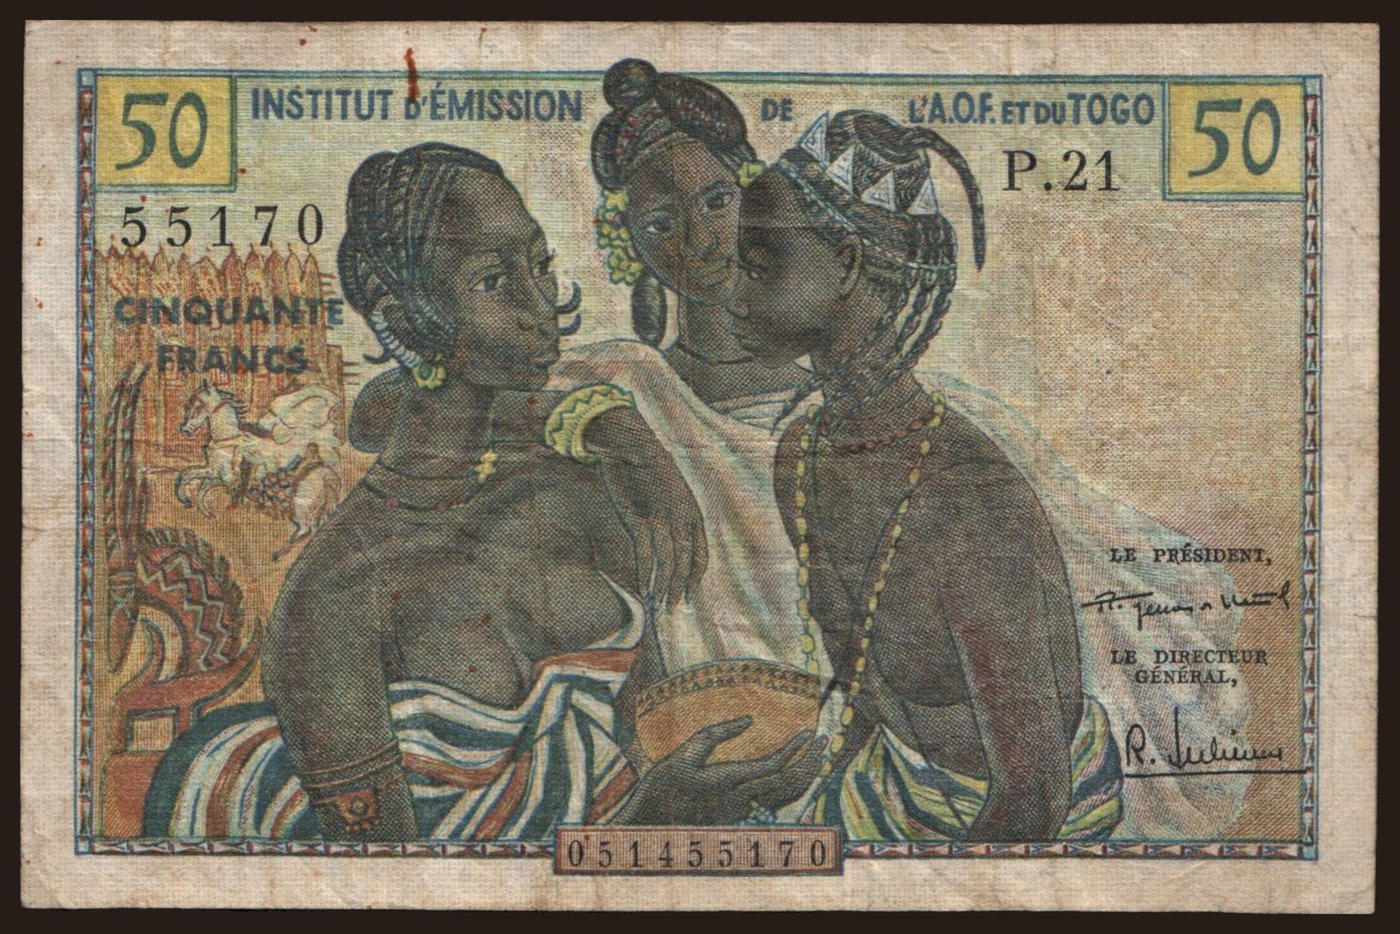 50 francs, 1956